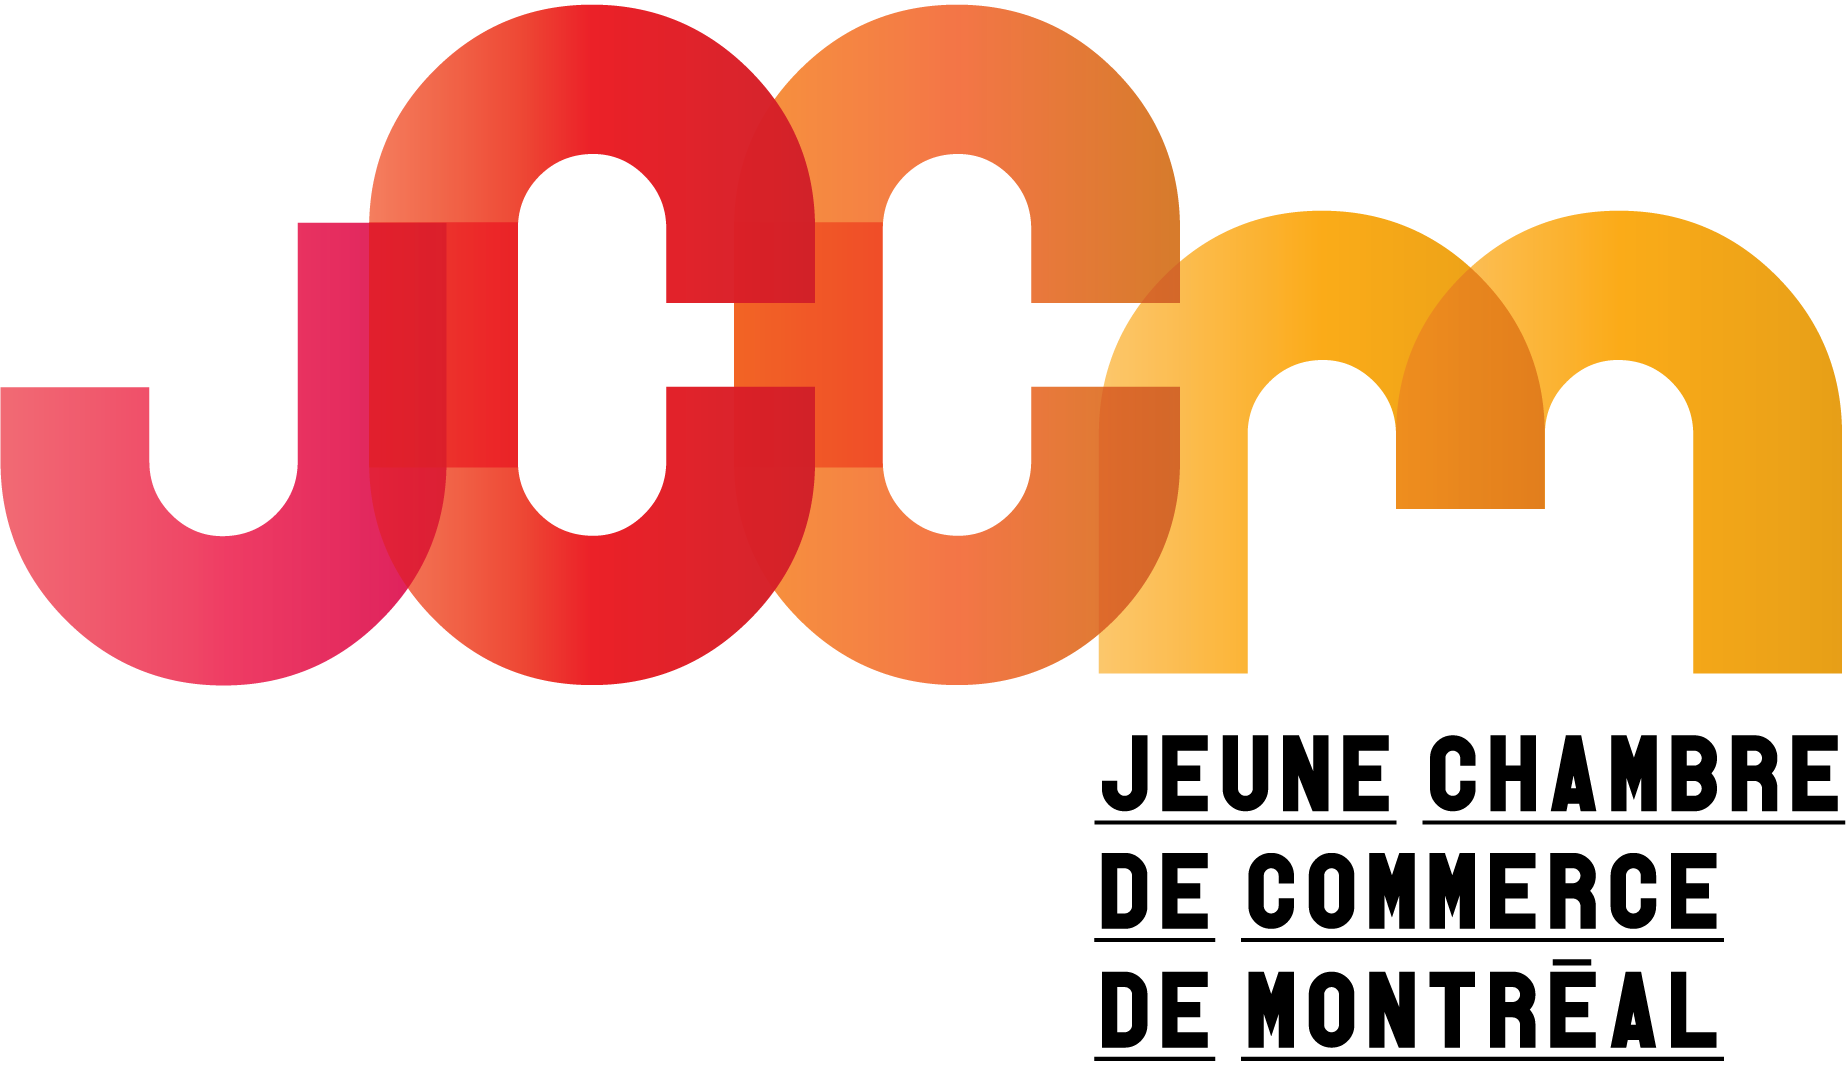 Logo JCCM